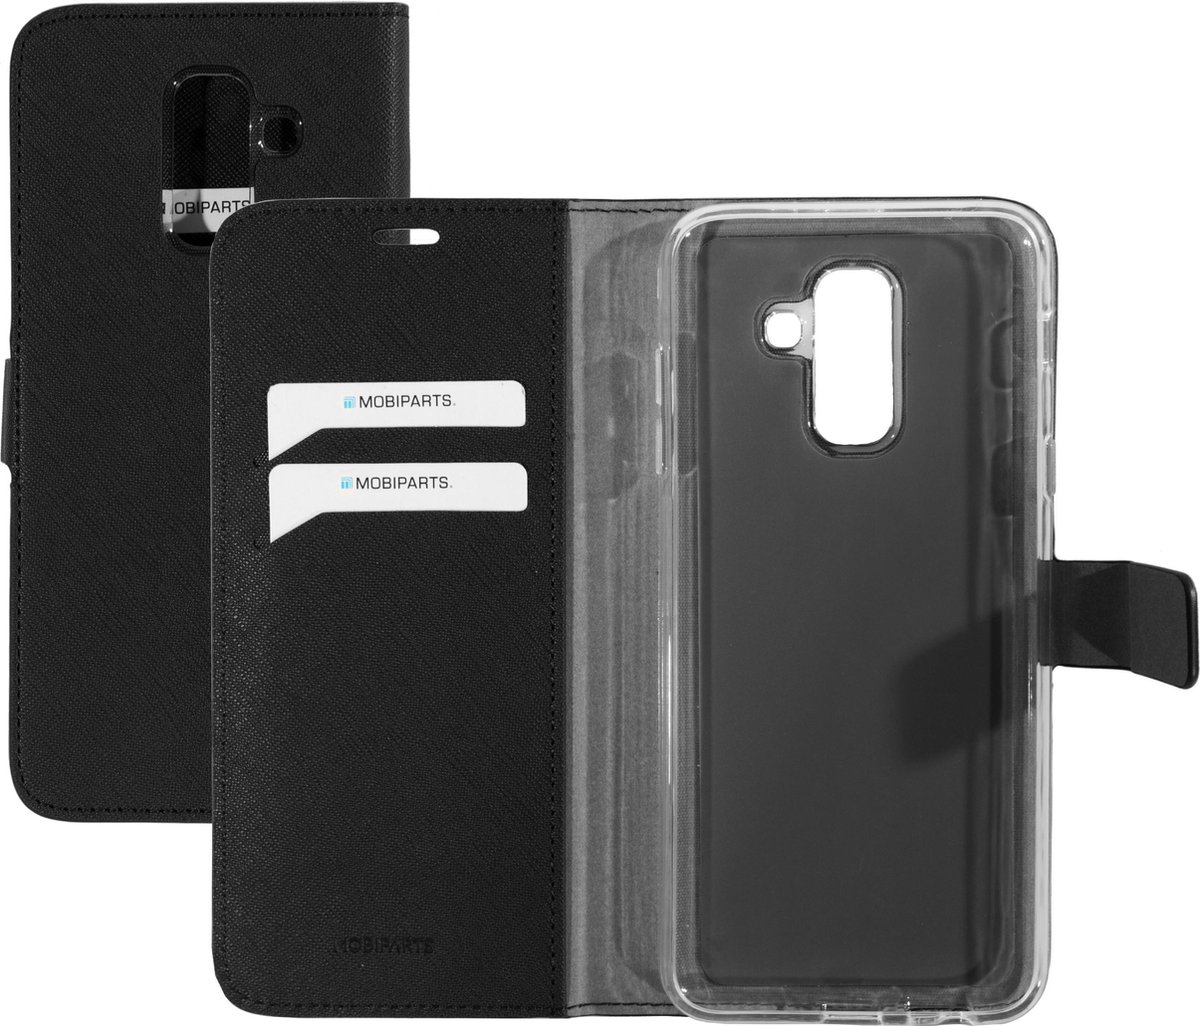 Samsung Galaxy A6+ (2018) Hoesje - Saffiano Wallet/Portemonnee hoesje - Magneet Sluiting - 3 Opbergvakken - Zwart - Mobiparts